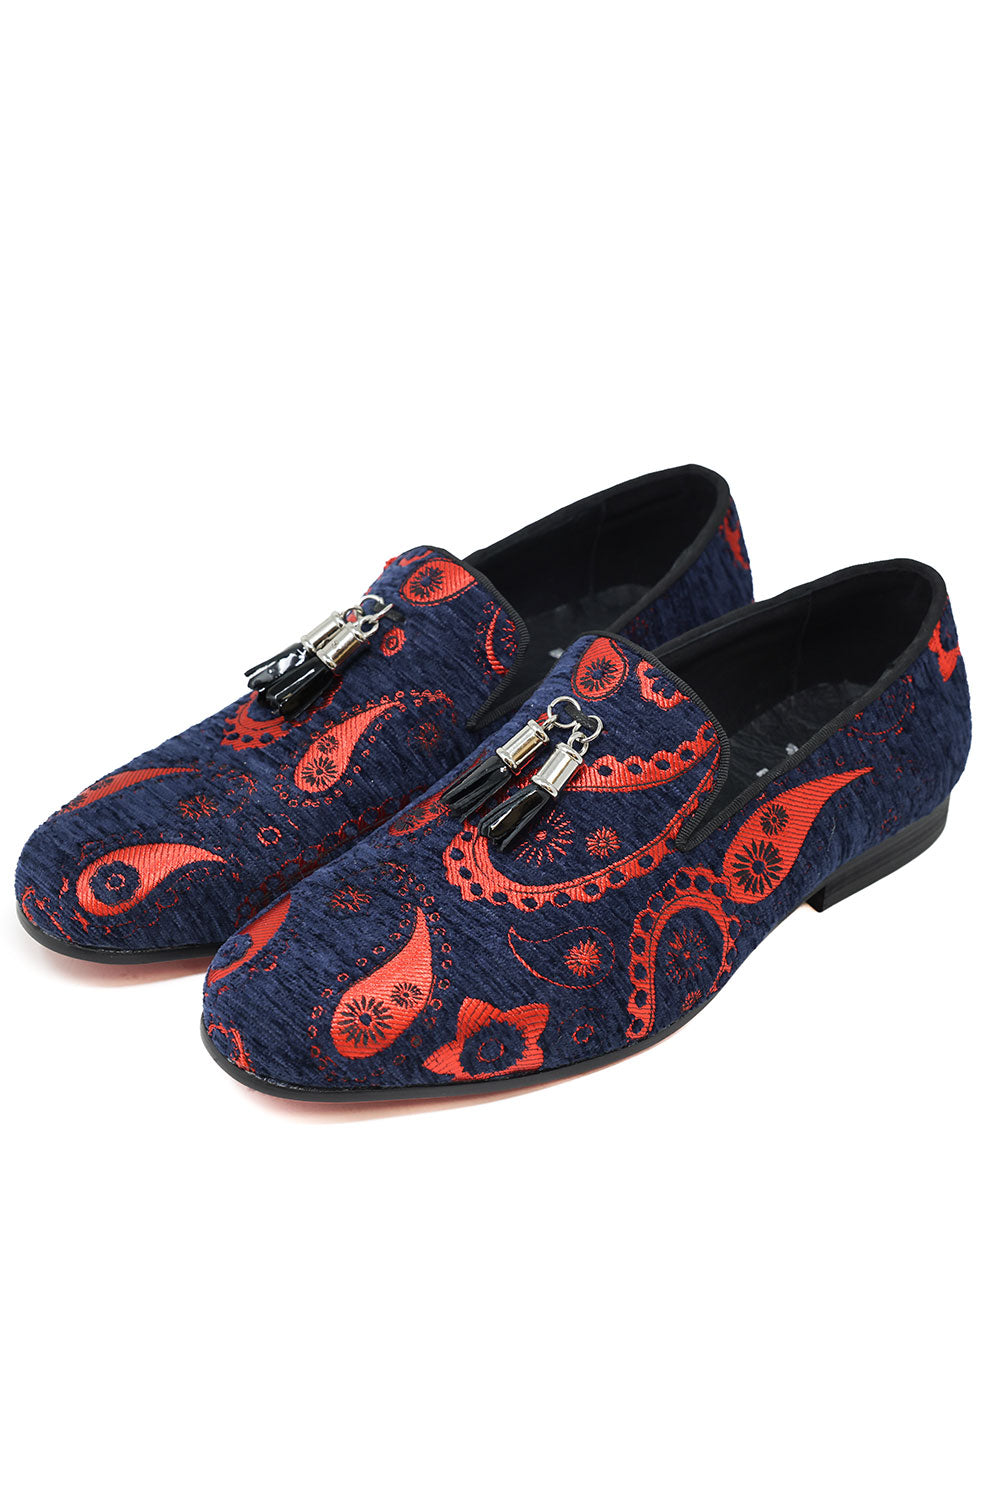 Barabas Men's Paisley Design Tassel Slip On Loafer Shoes 2SH3101